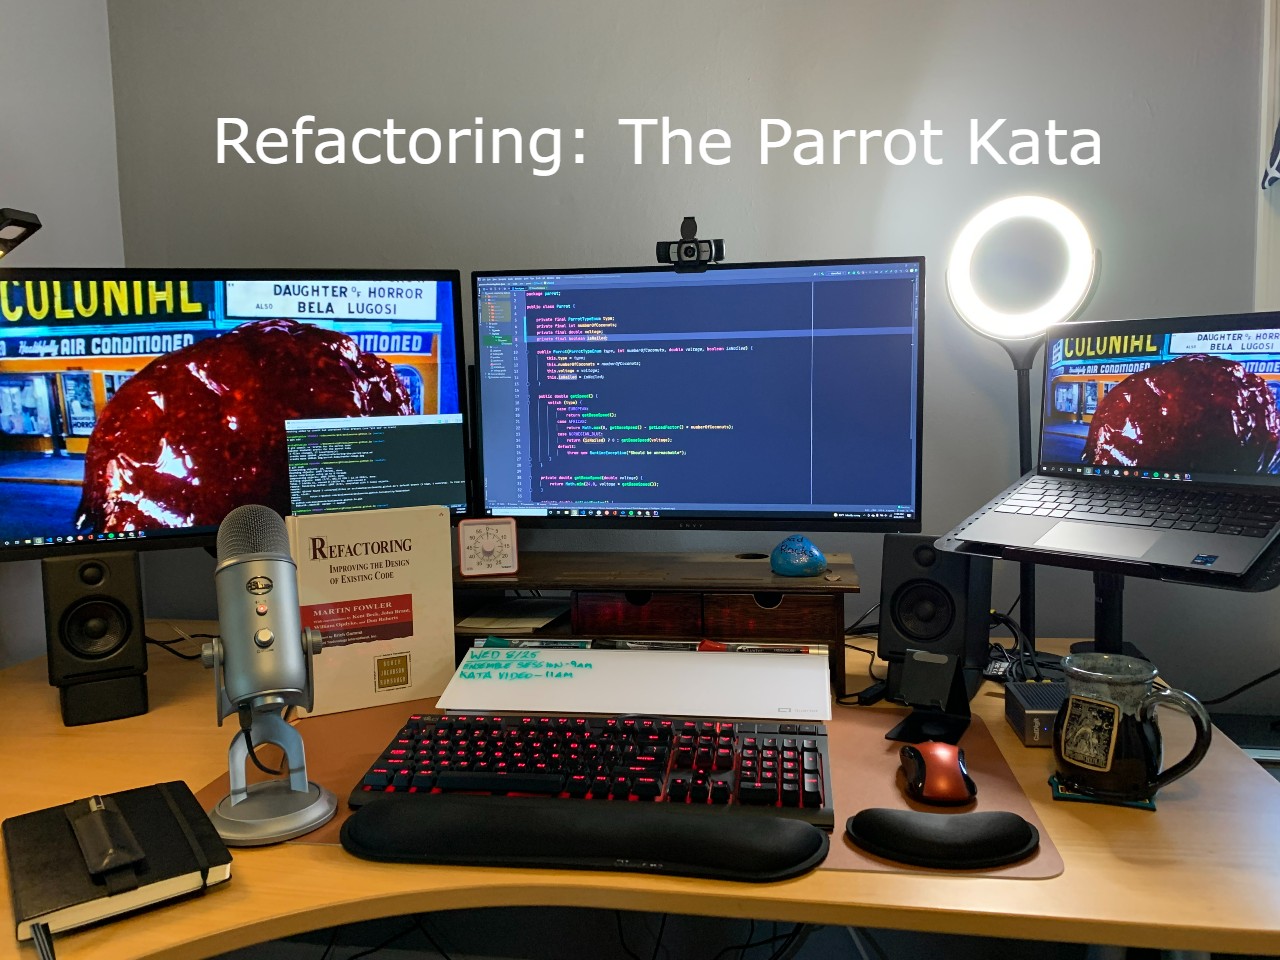 The Parrot Kata